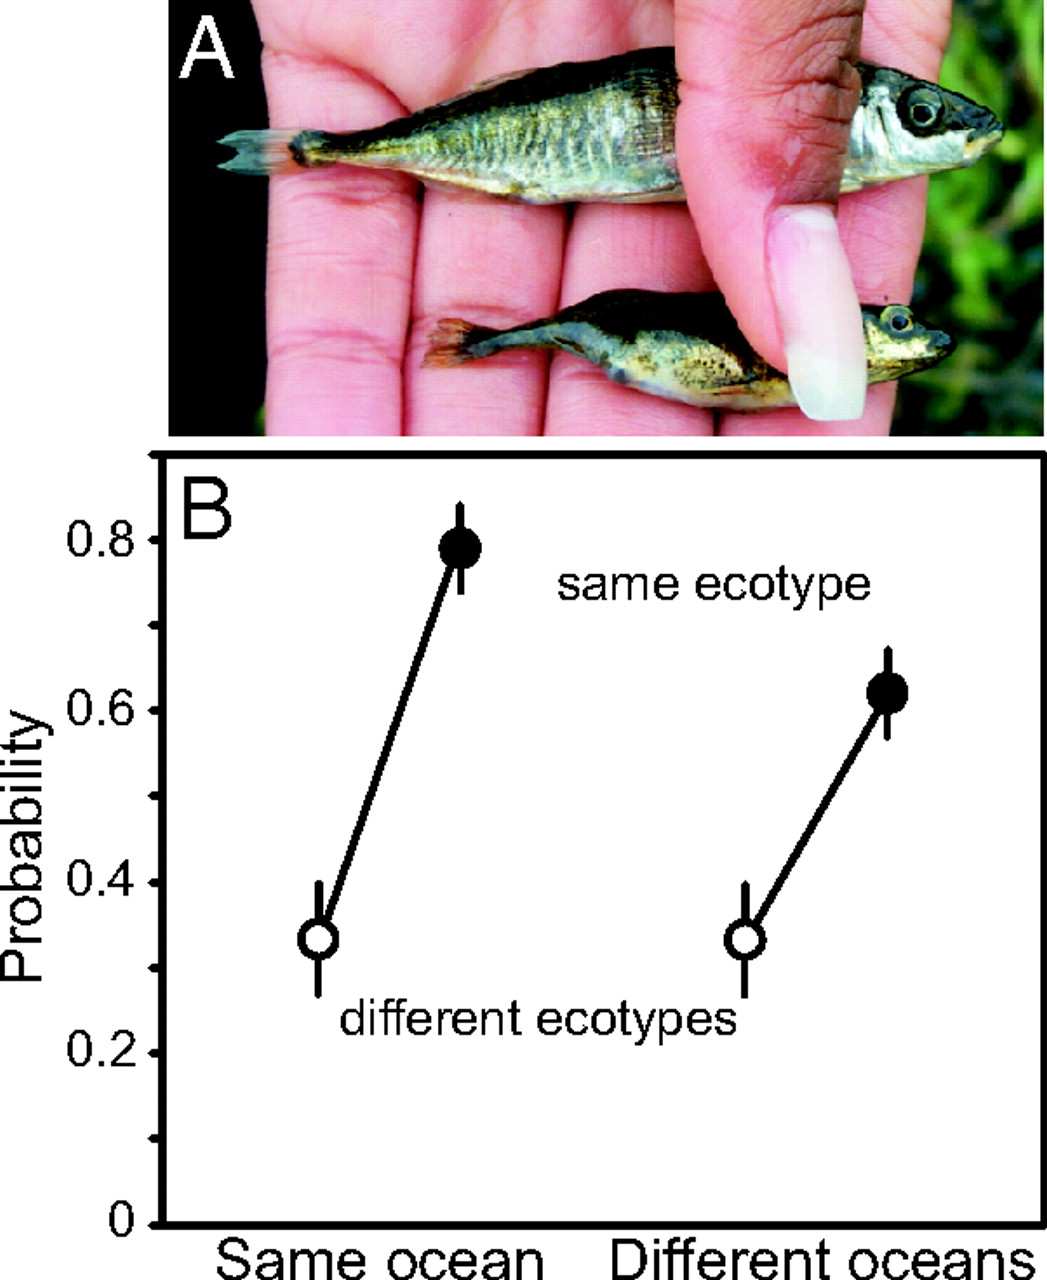 Reinforcement Posílení reprodukční izolace mezi druhy po sekundárním kontaktu působením selekce.